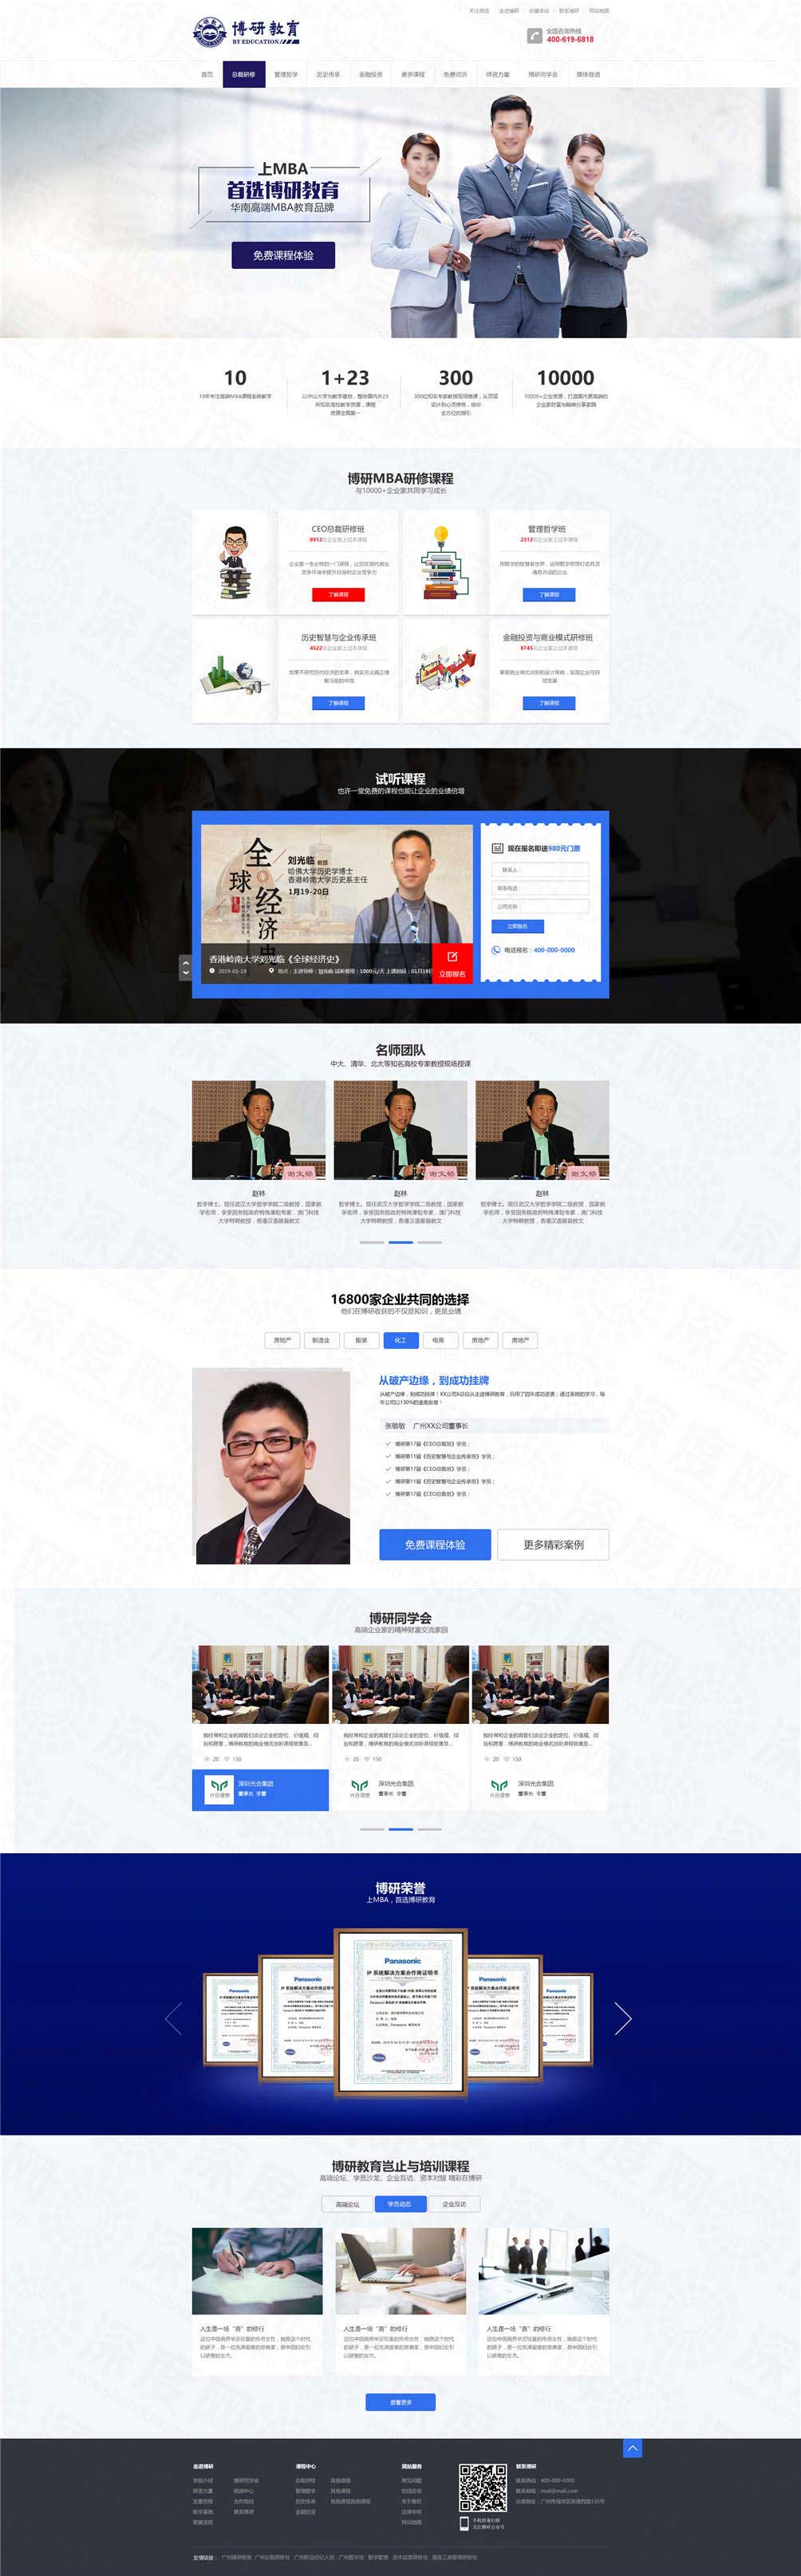 广州博研教育营销网站建设案例